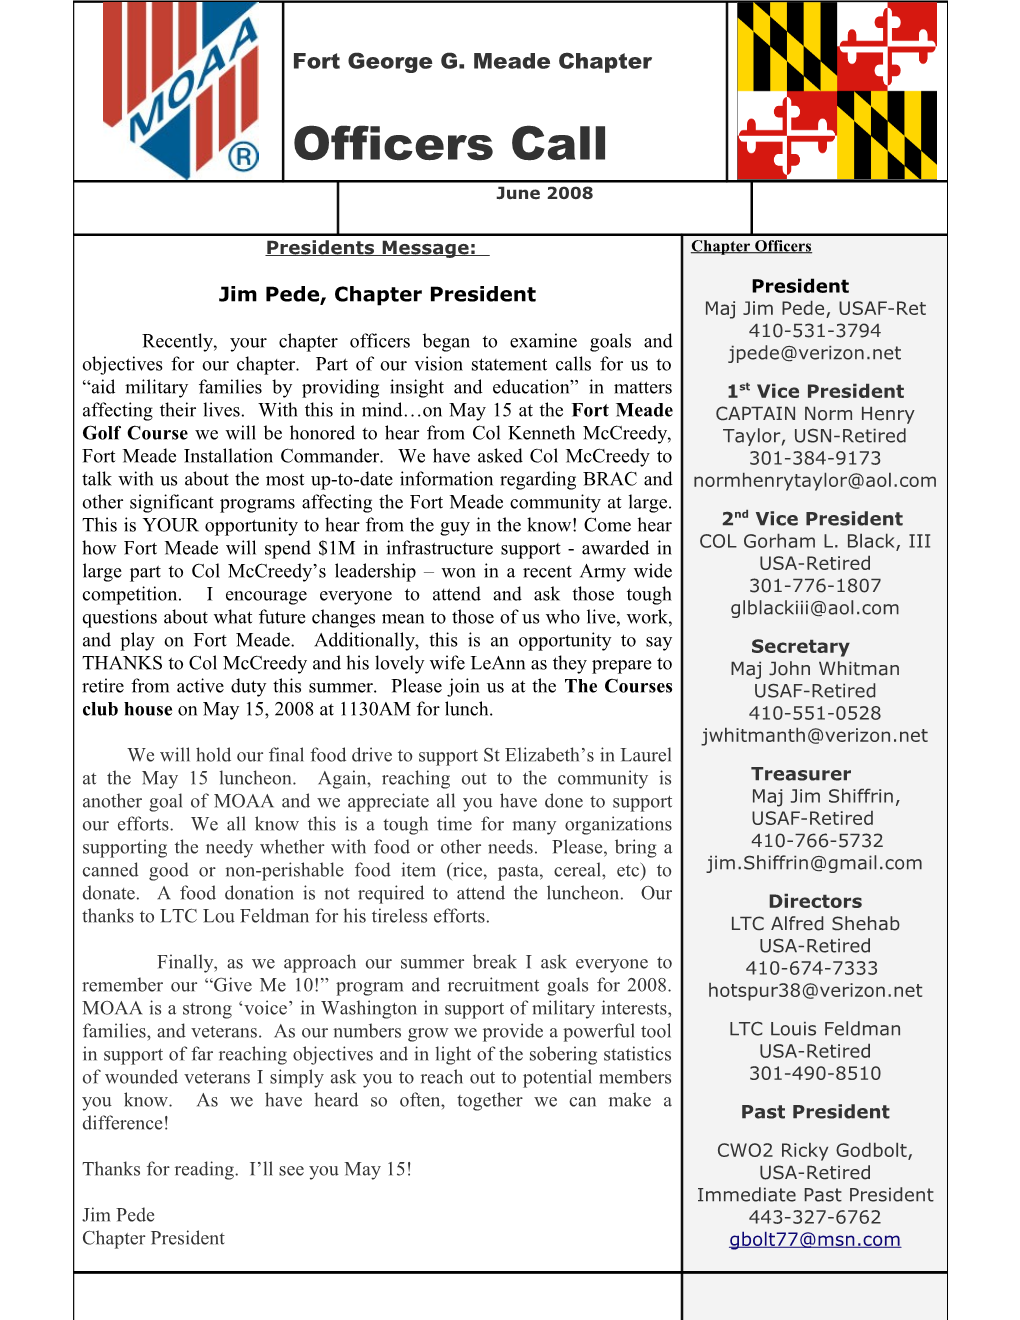 June 2008 FGGM/MOAA Newsletter